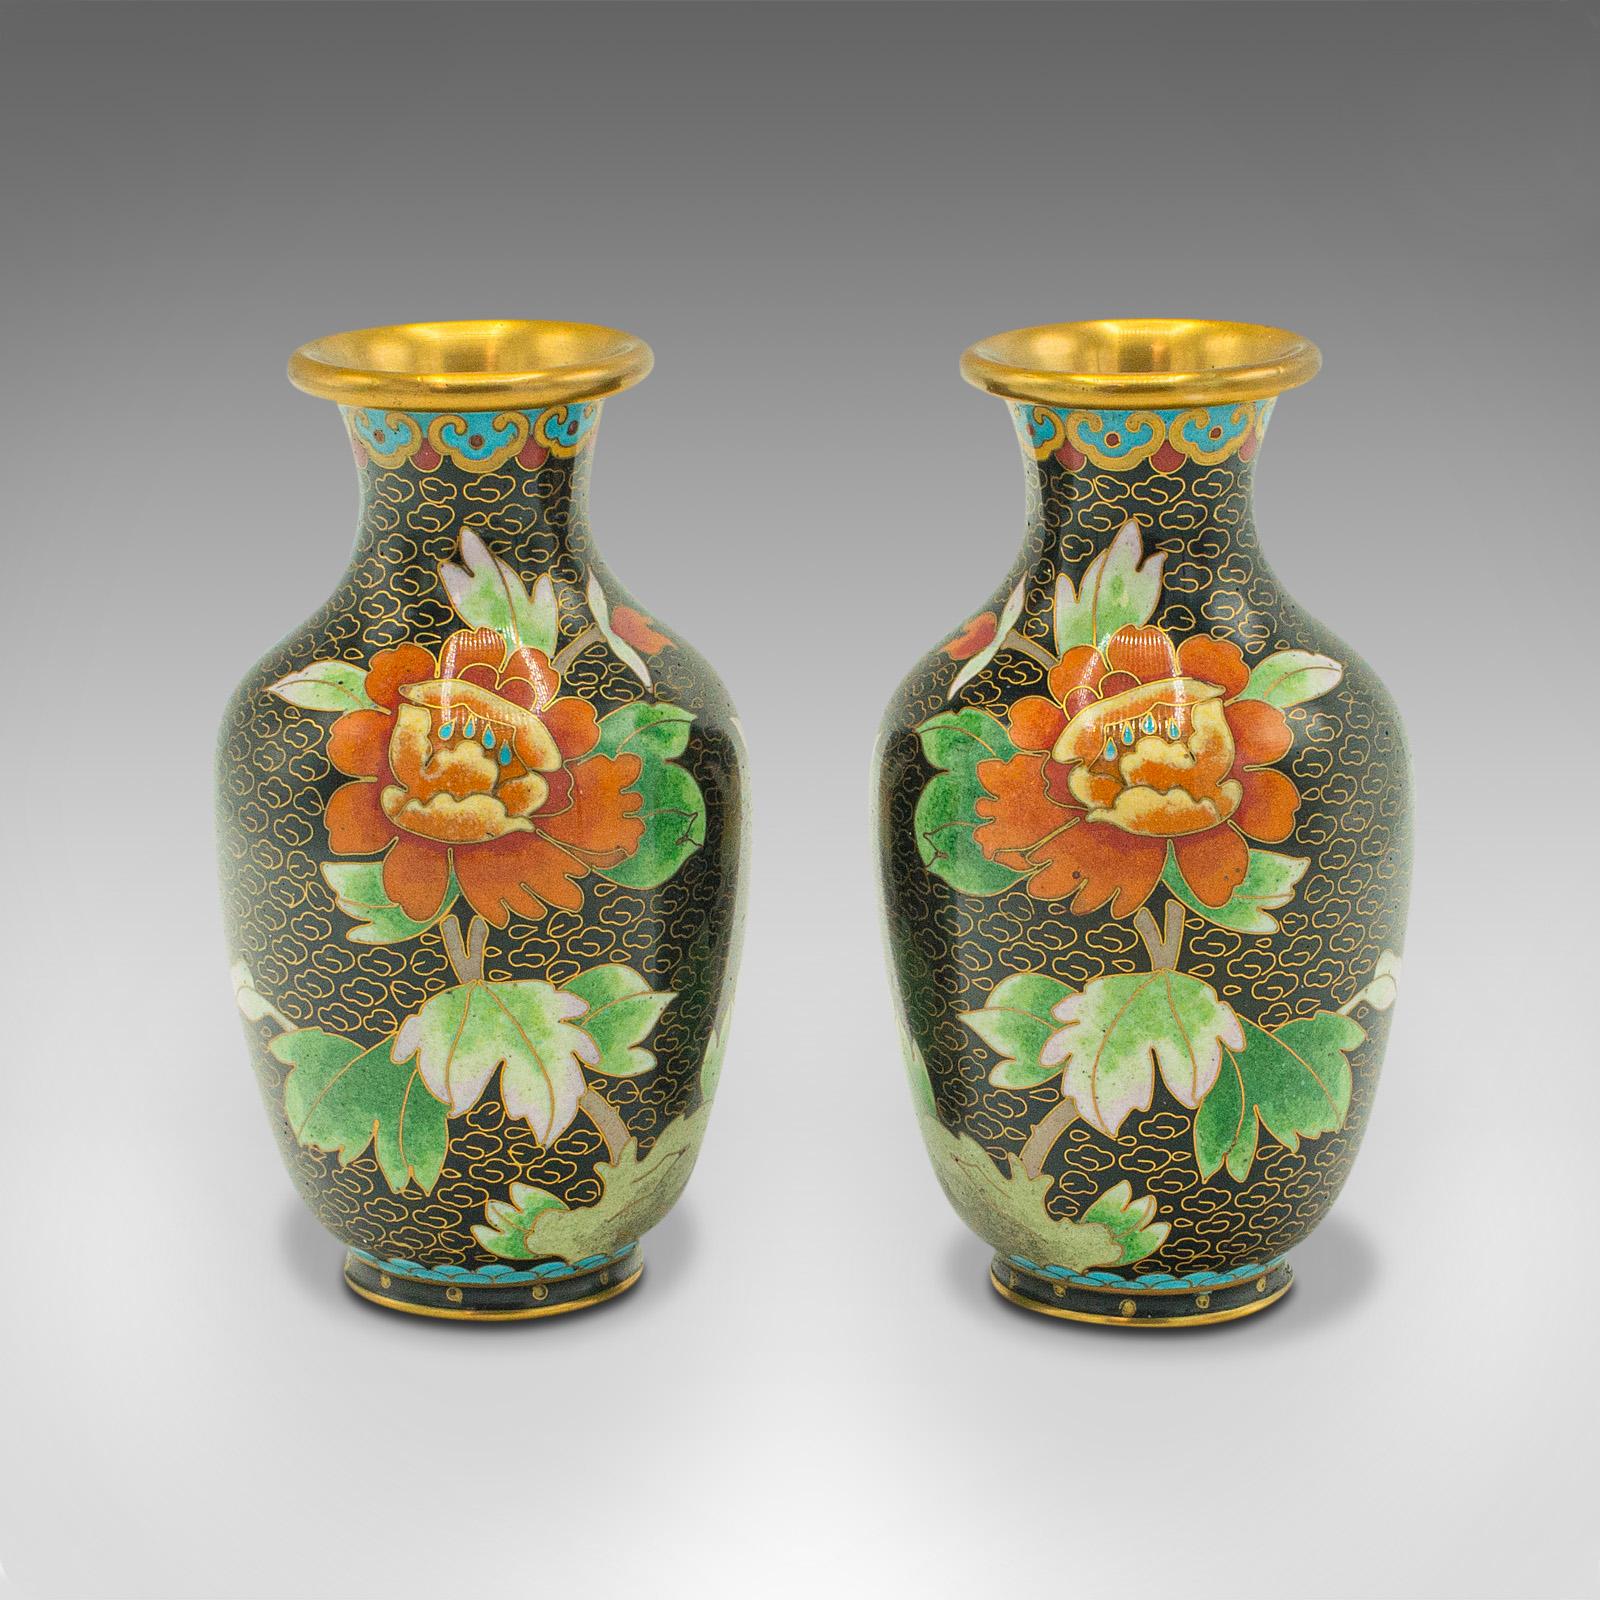 Dies ist ein Paar kleine Vintage Cloisonné Vasen. Eine japanische Blumenurne aus Keramik aus der späten Art-déco-Periode, um 1950.

Herrlich zierlich, mit einem attraktiven Finish.
Zeigt eine wünschenswerte gealterte Patina und in gutem